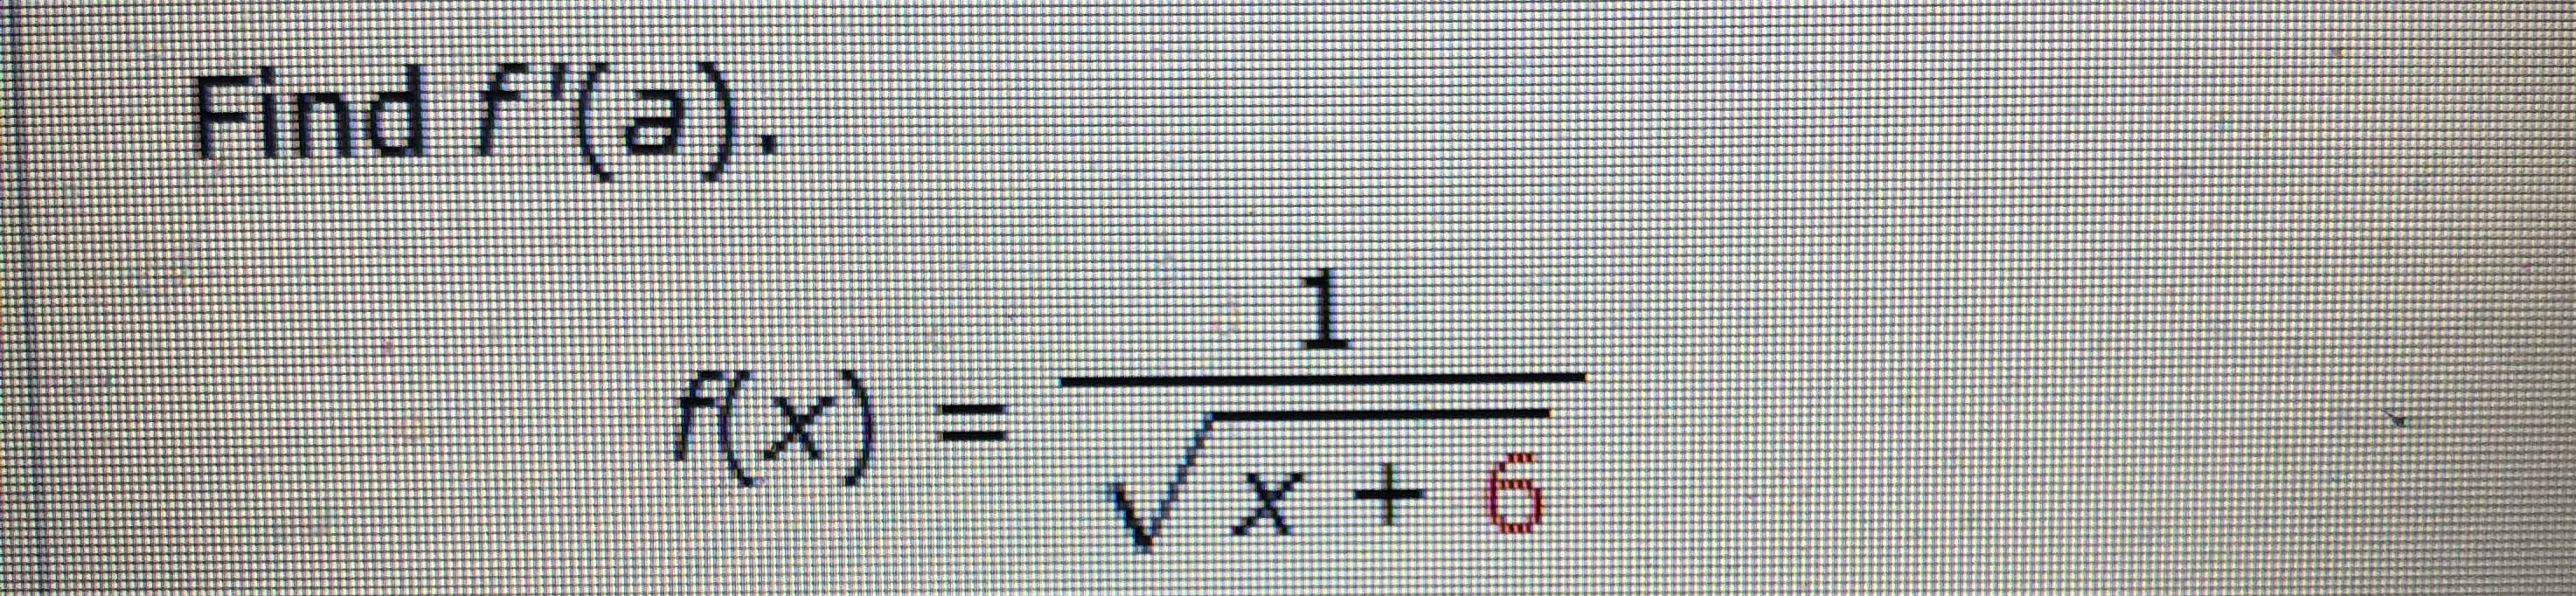 Find f'(a).
1.
f(x) =
